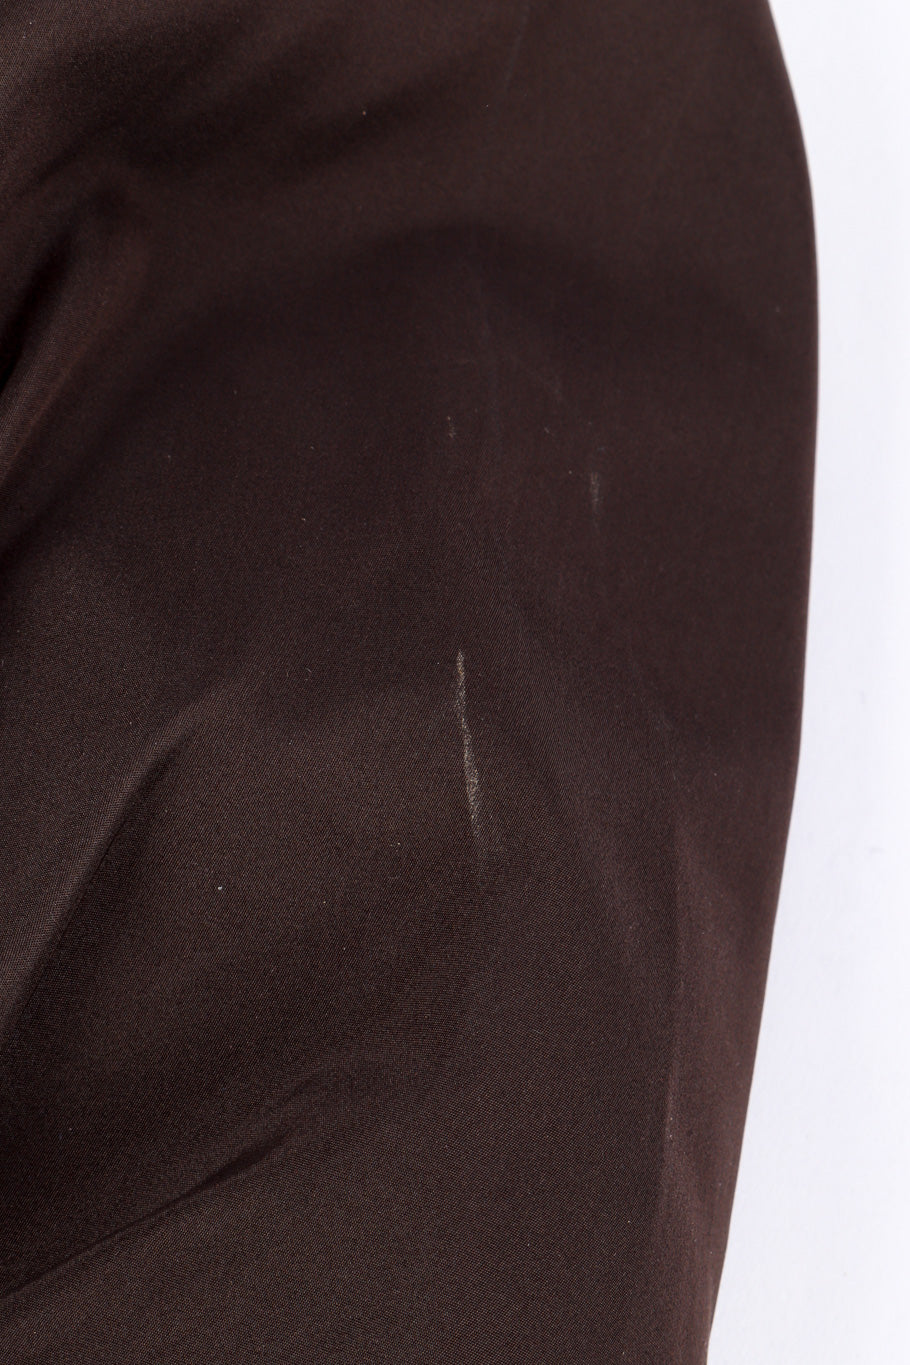 Silk velvet jacket by Yves Saint Laurent small mark @recessla